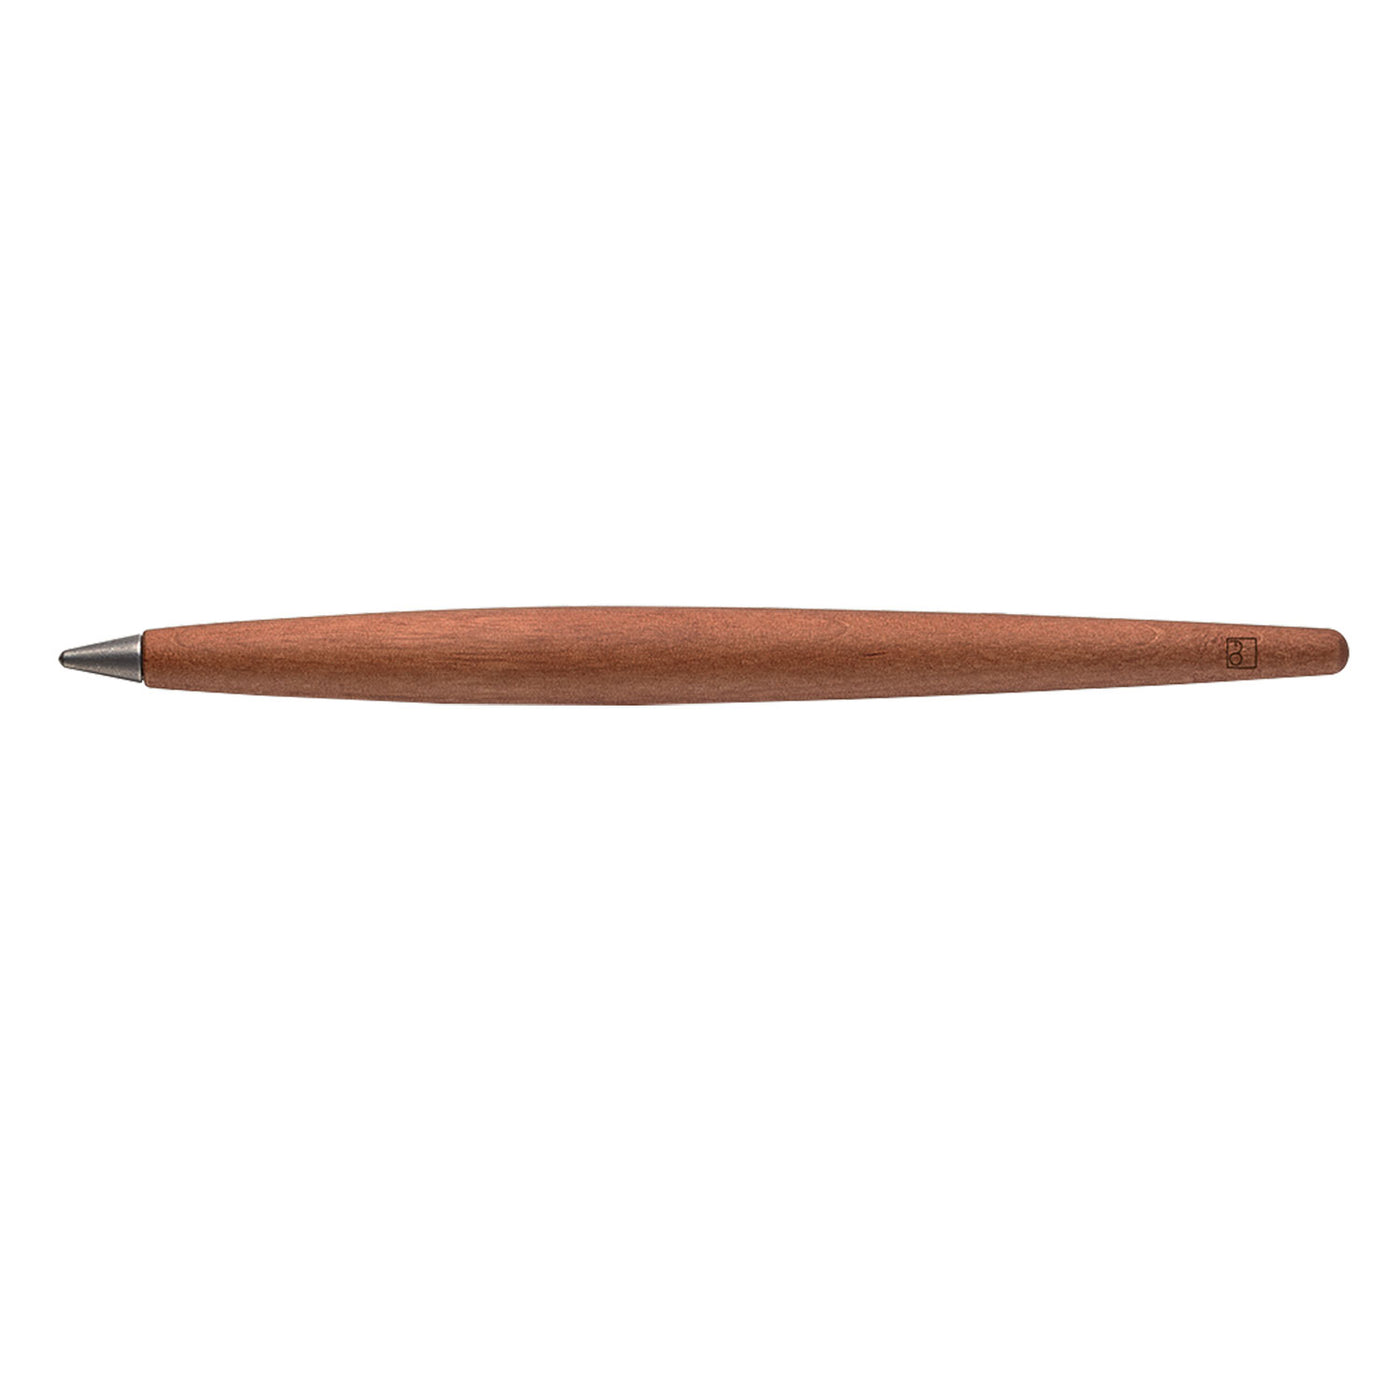 Pininfarina Segno Forever Piuma Leonardo 500th Limited Ethergraf Pencil - Evaporated Pear Wood 3